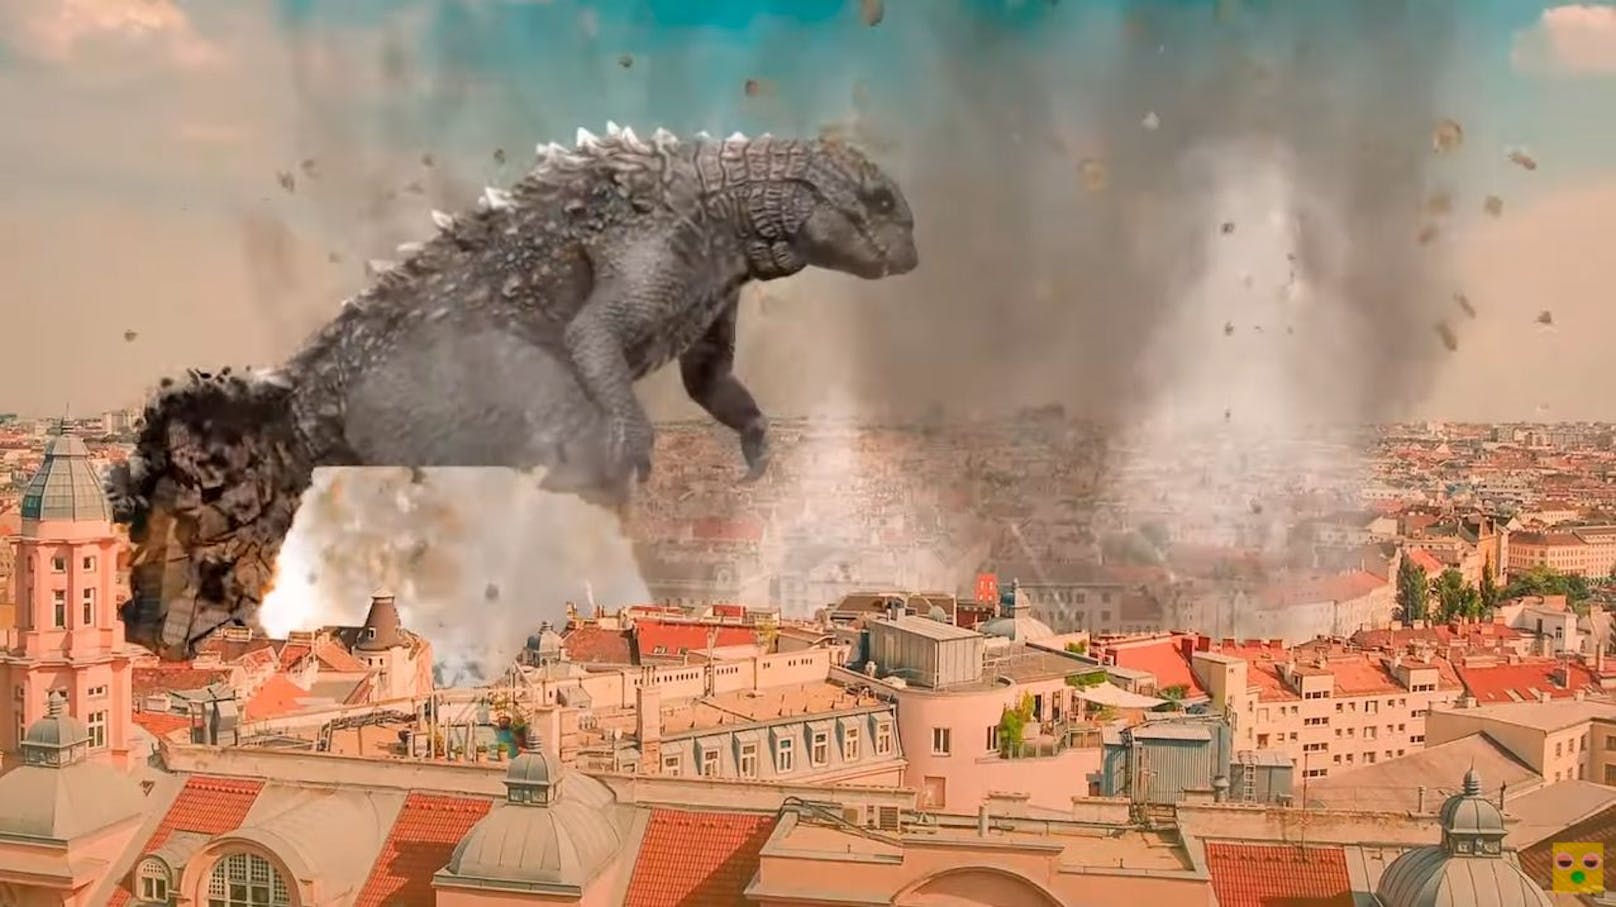 "Folgen eines Godzilla-Angriffs auf Wien", nennt sich die Persiflage auf das Atombomben-Video des Außenministeriums